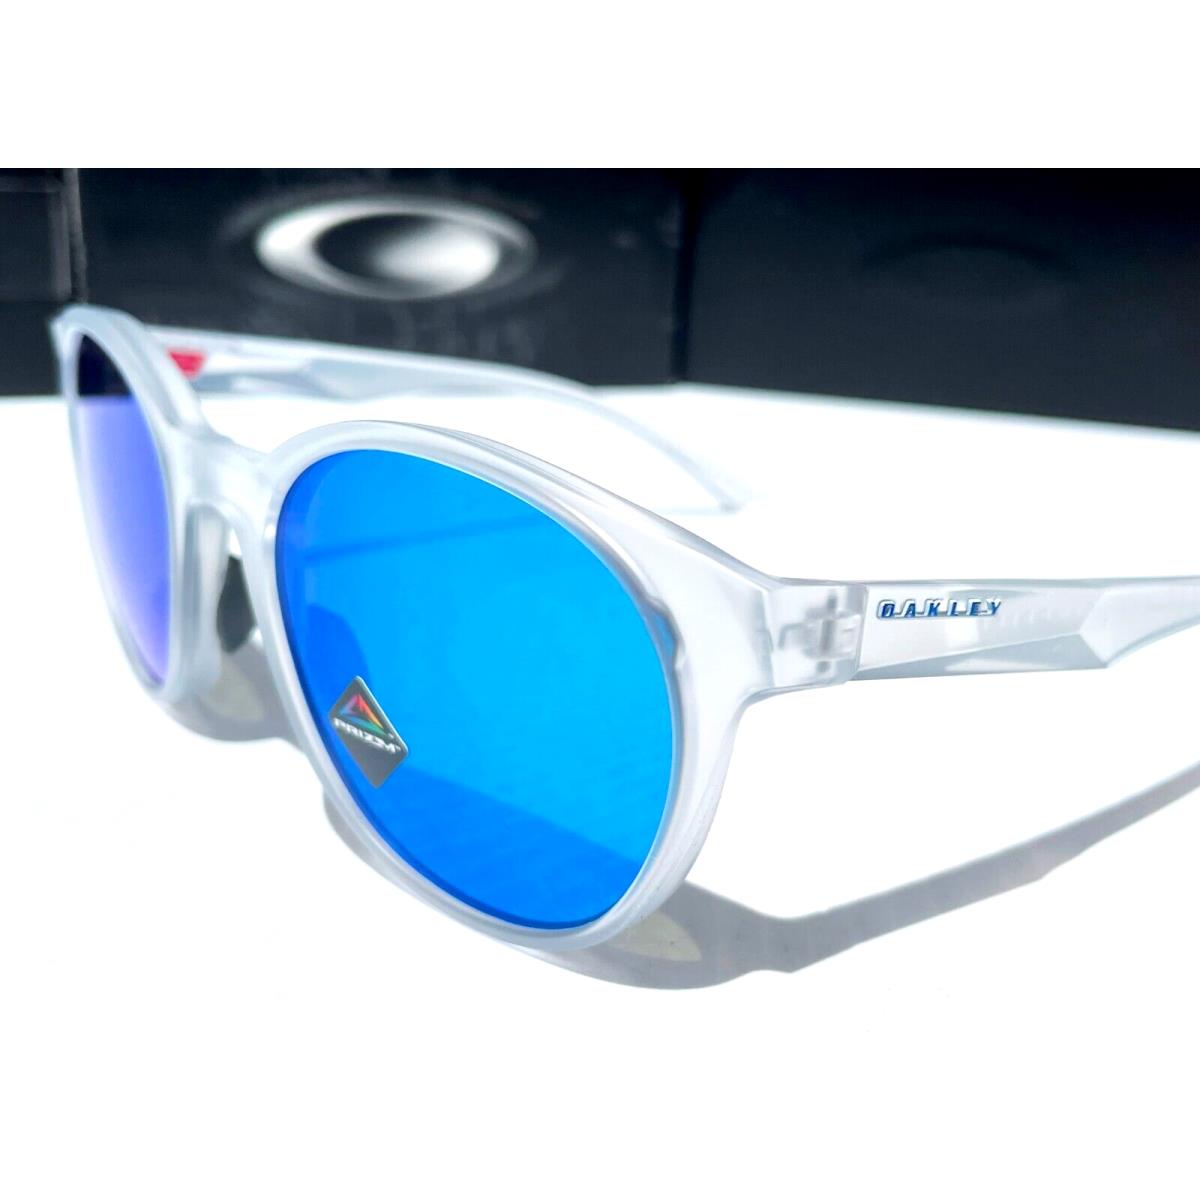 Oakley sunglasses Spindrift - Frame: , Lens: Blue 5